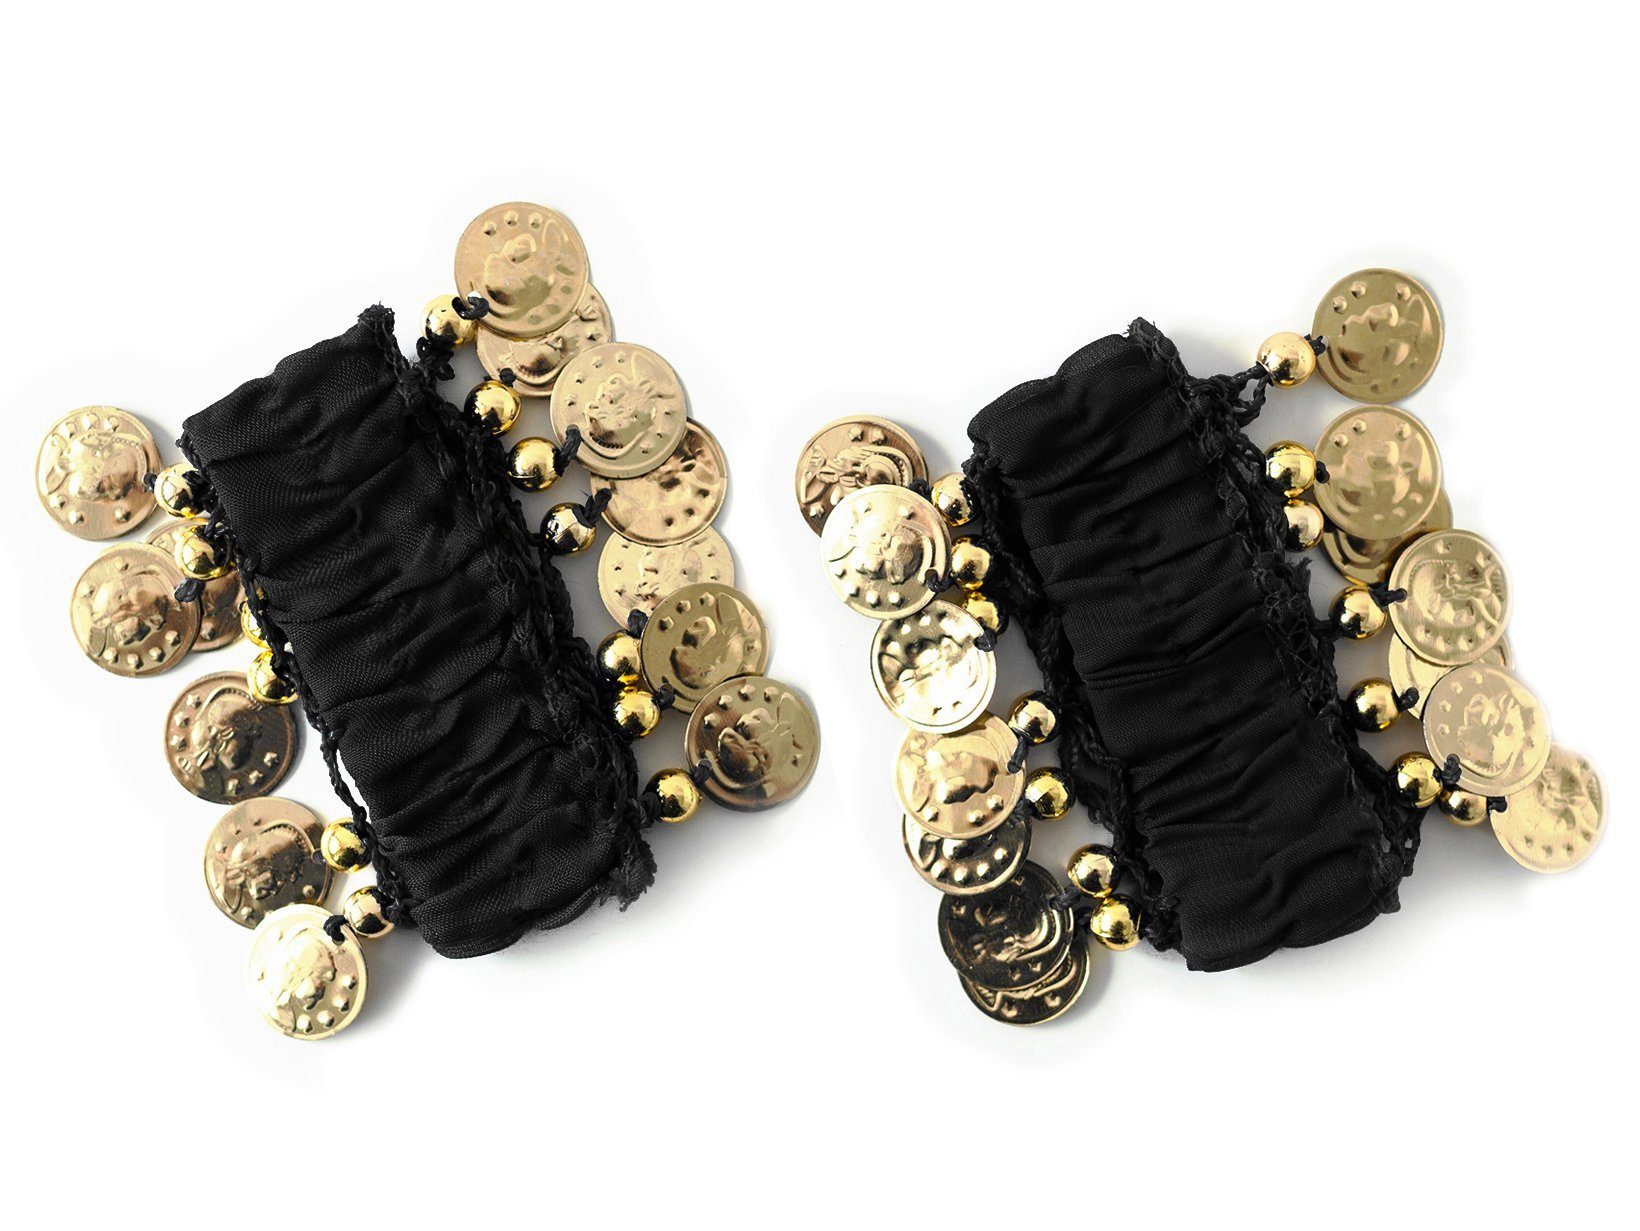 MyBeautyworld24 Armband Belly Dance Handkette (Paar) Fasching Armbänder schwarz